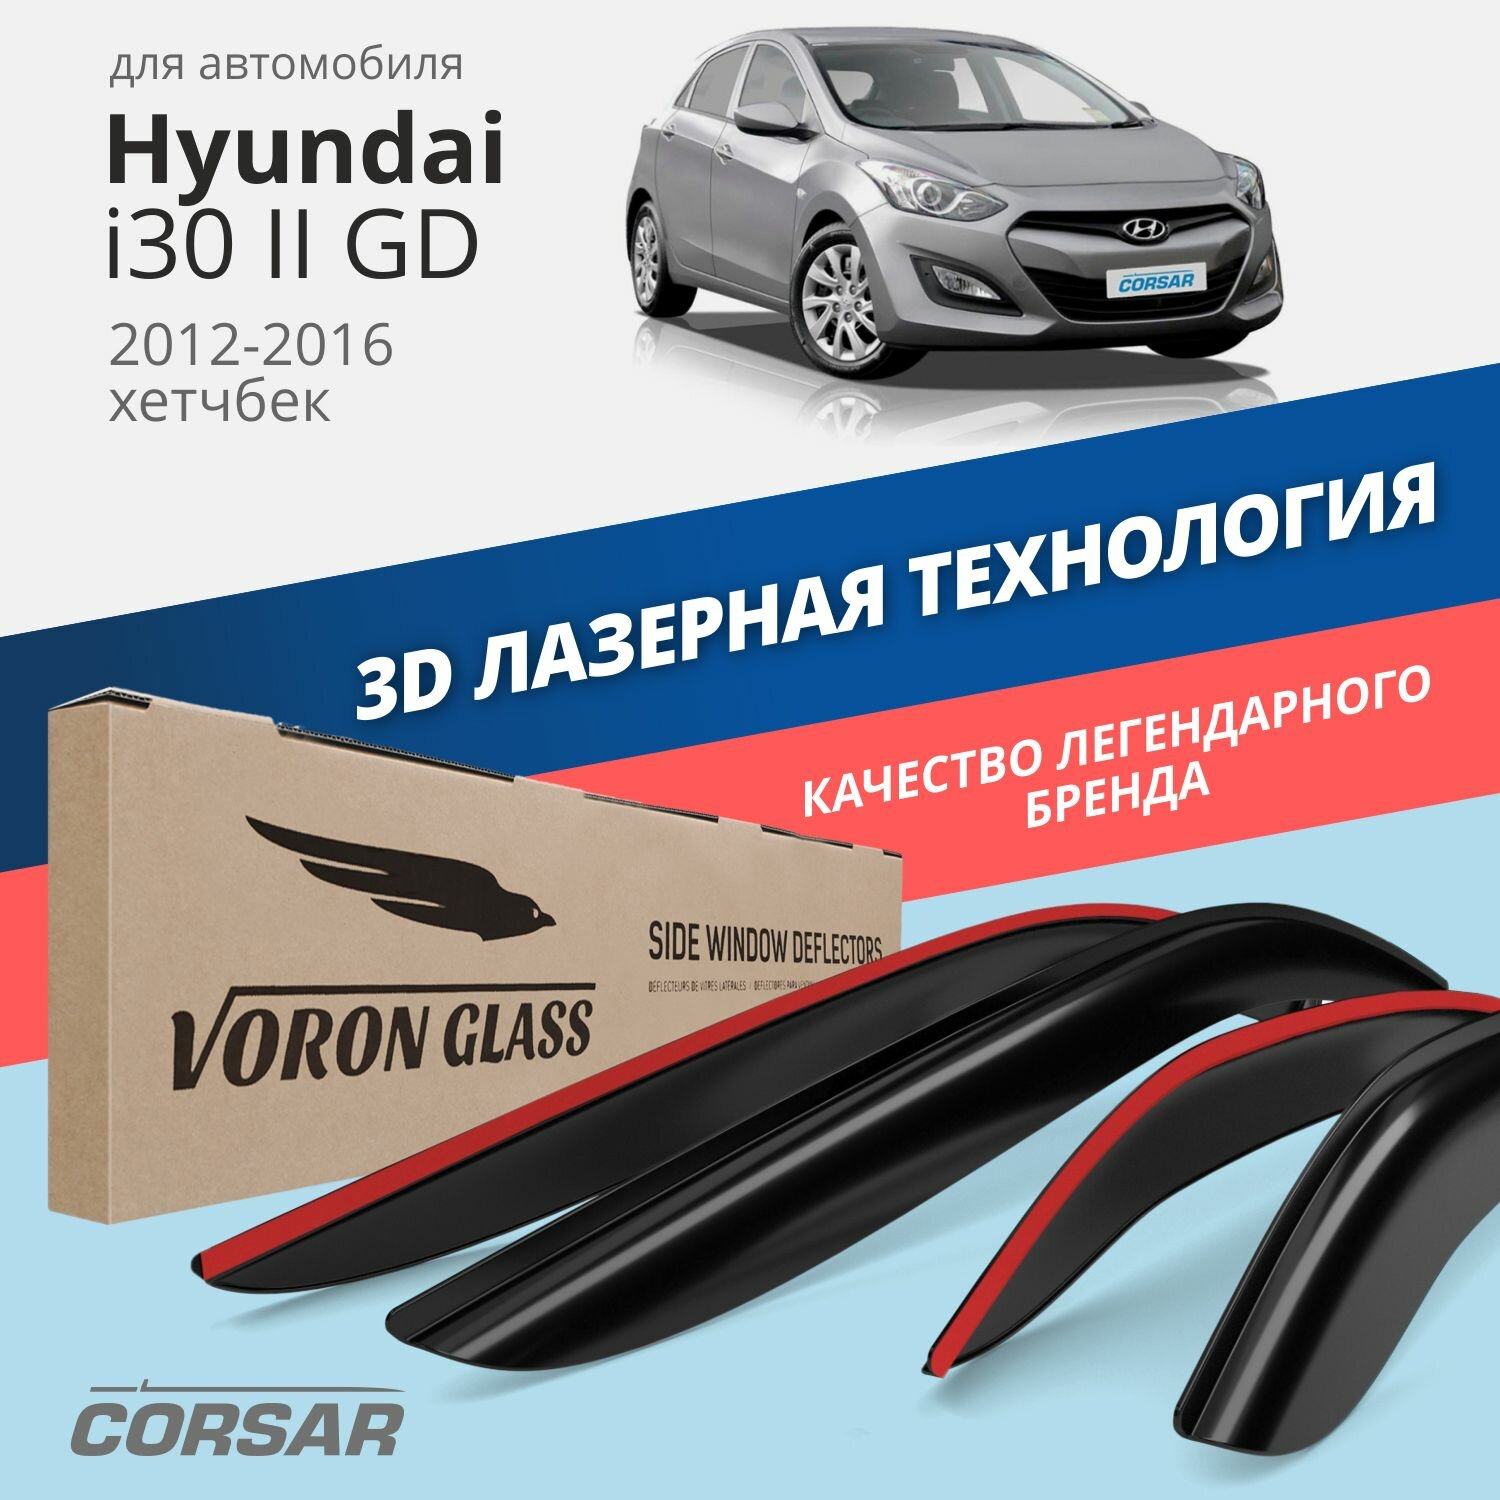 Дефлекторы окон Voron Glass серия Corsar для Hyundai i30 II (GD) 2012-2016/хетчбек накладные 4 шт.